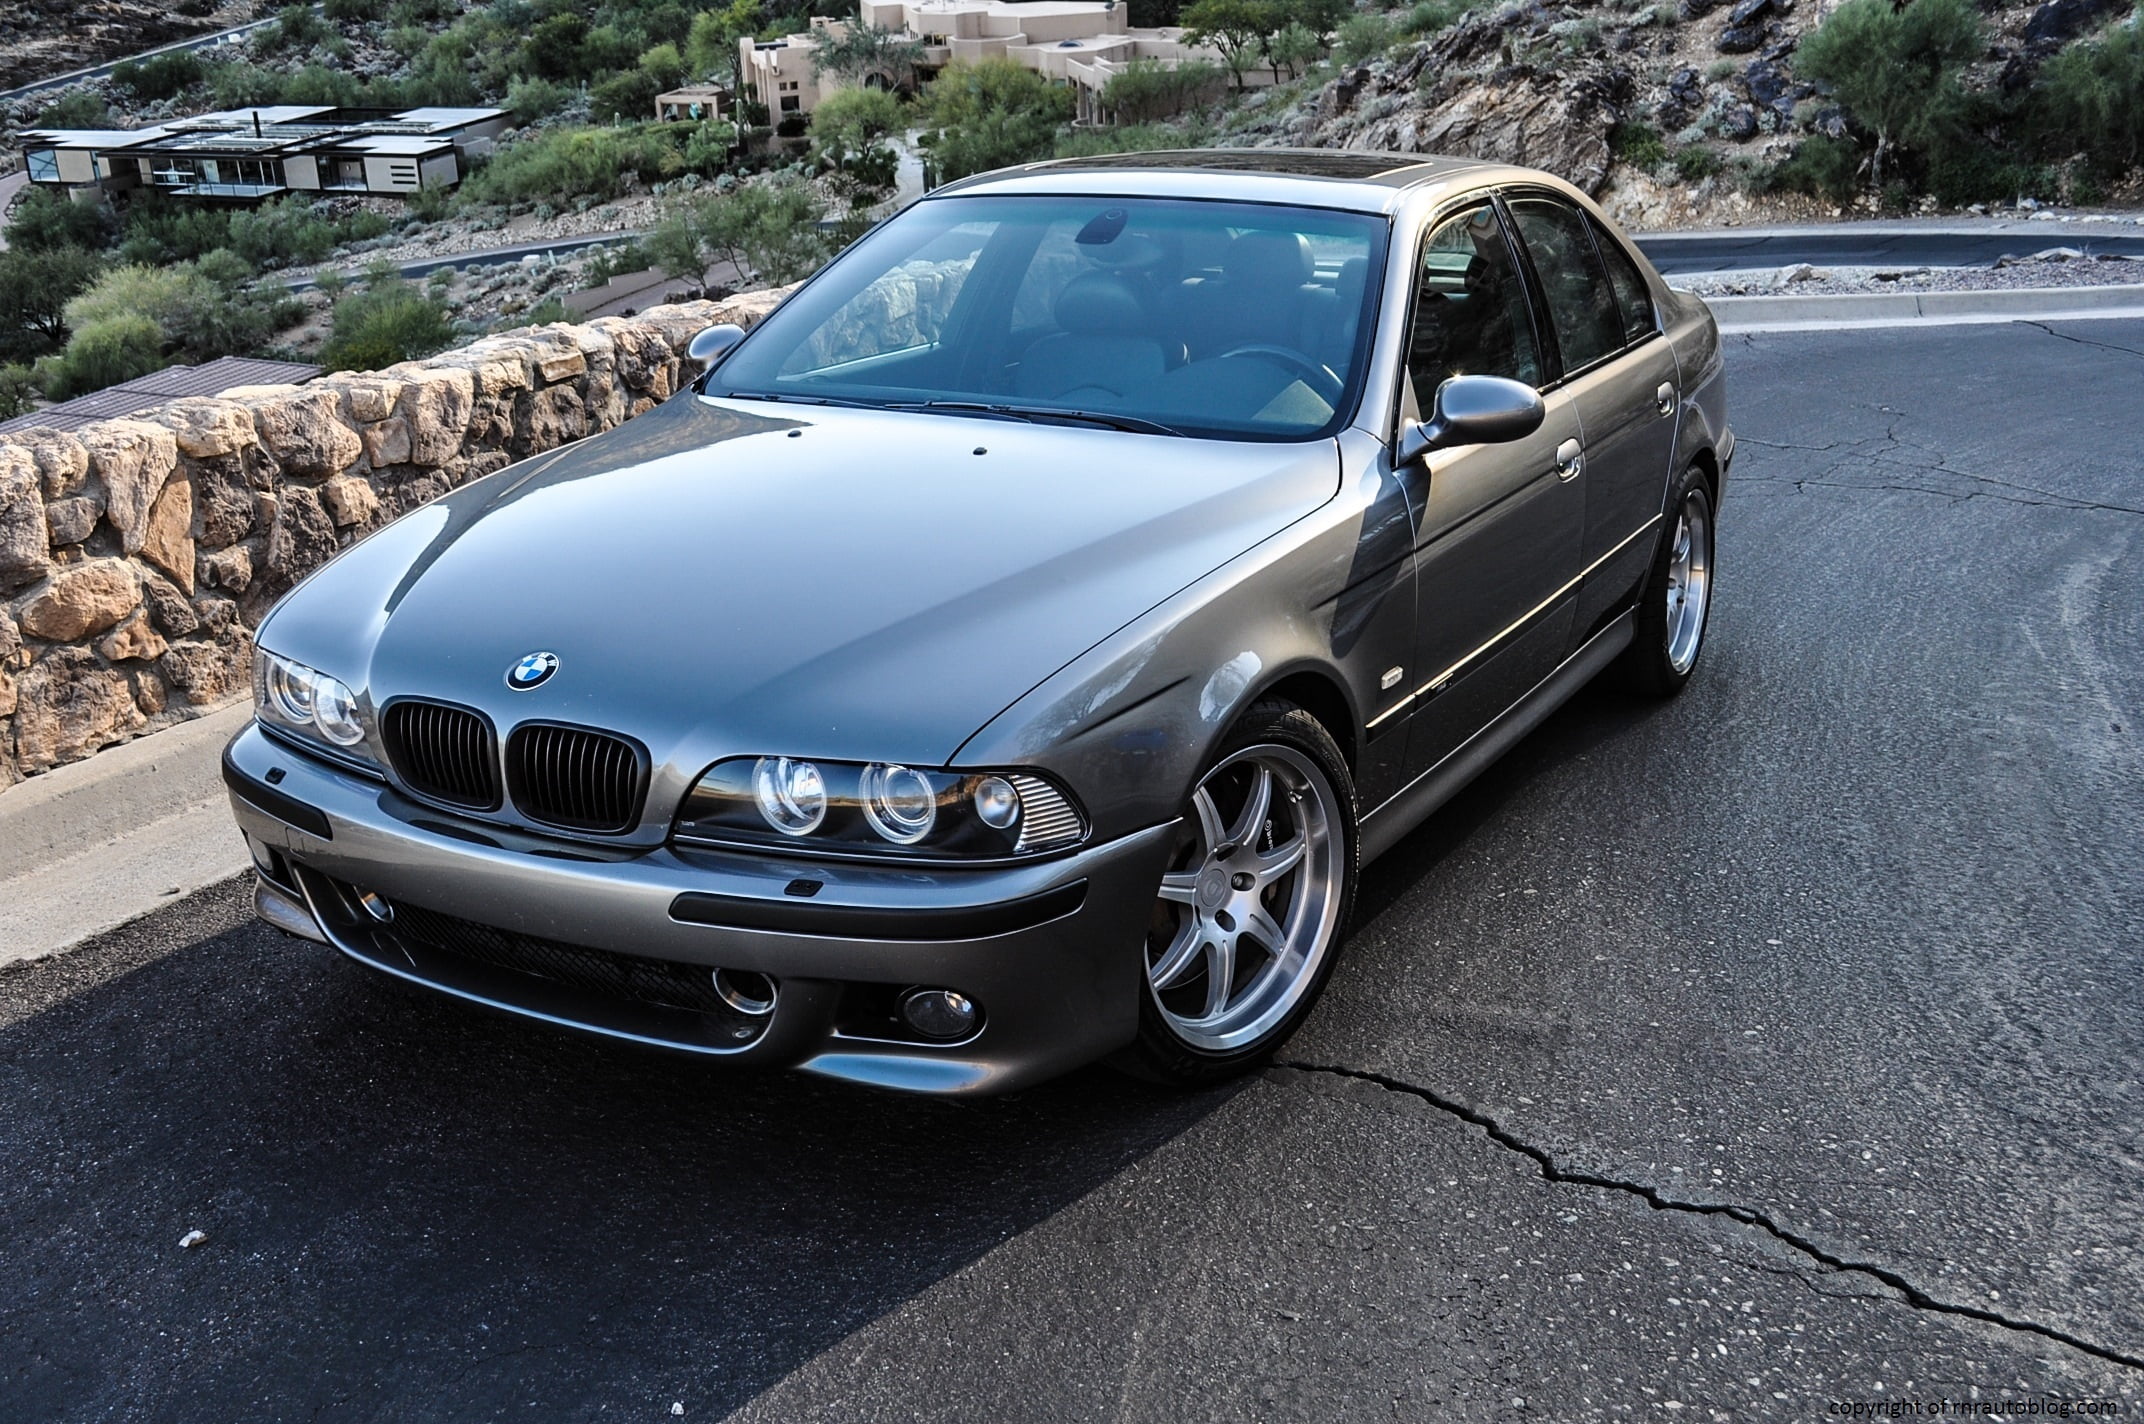 grey BMW sedan, m5, e39, silver, side view, car, land Vehicle